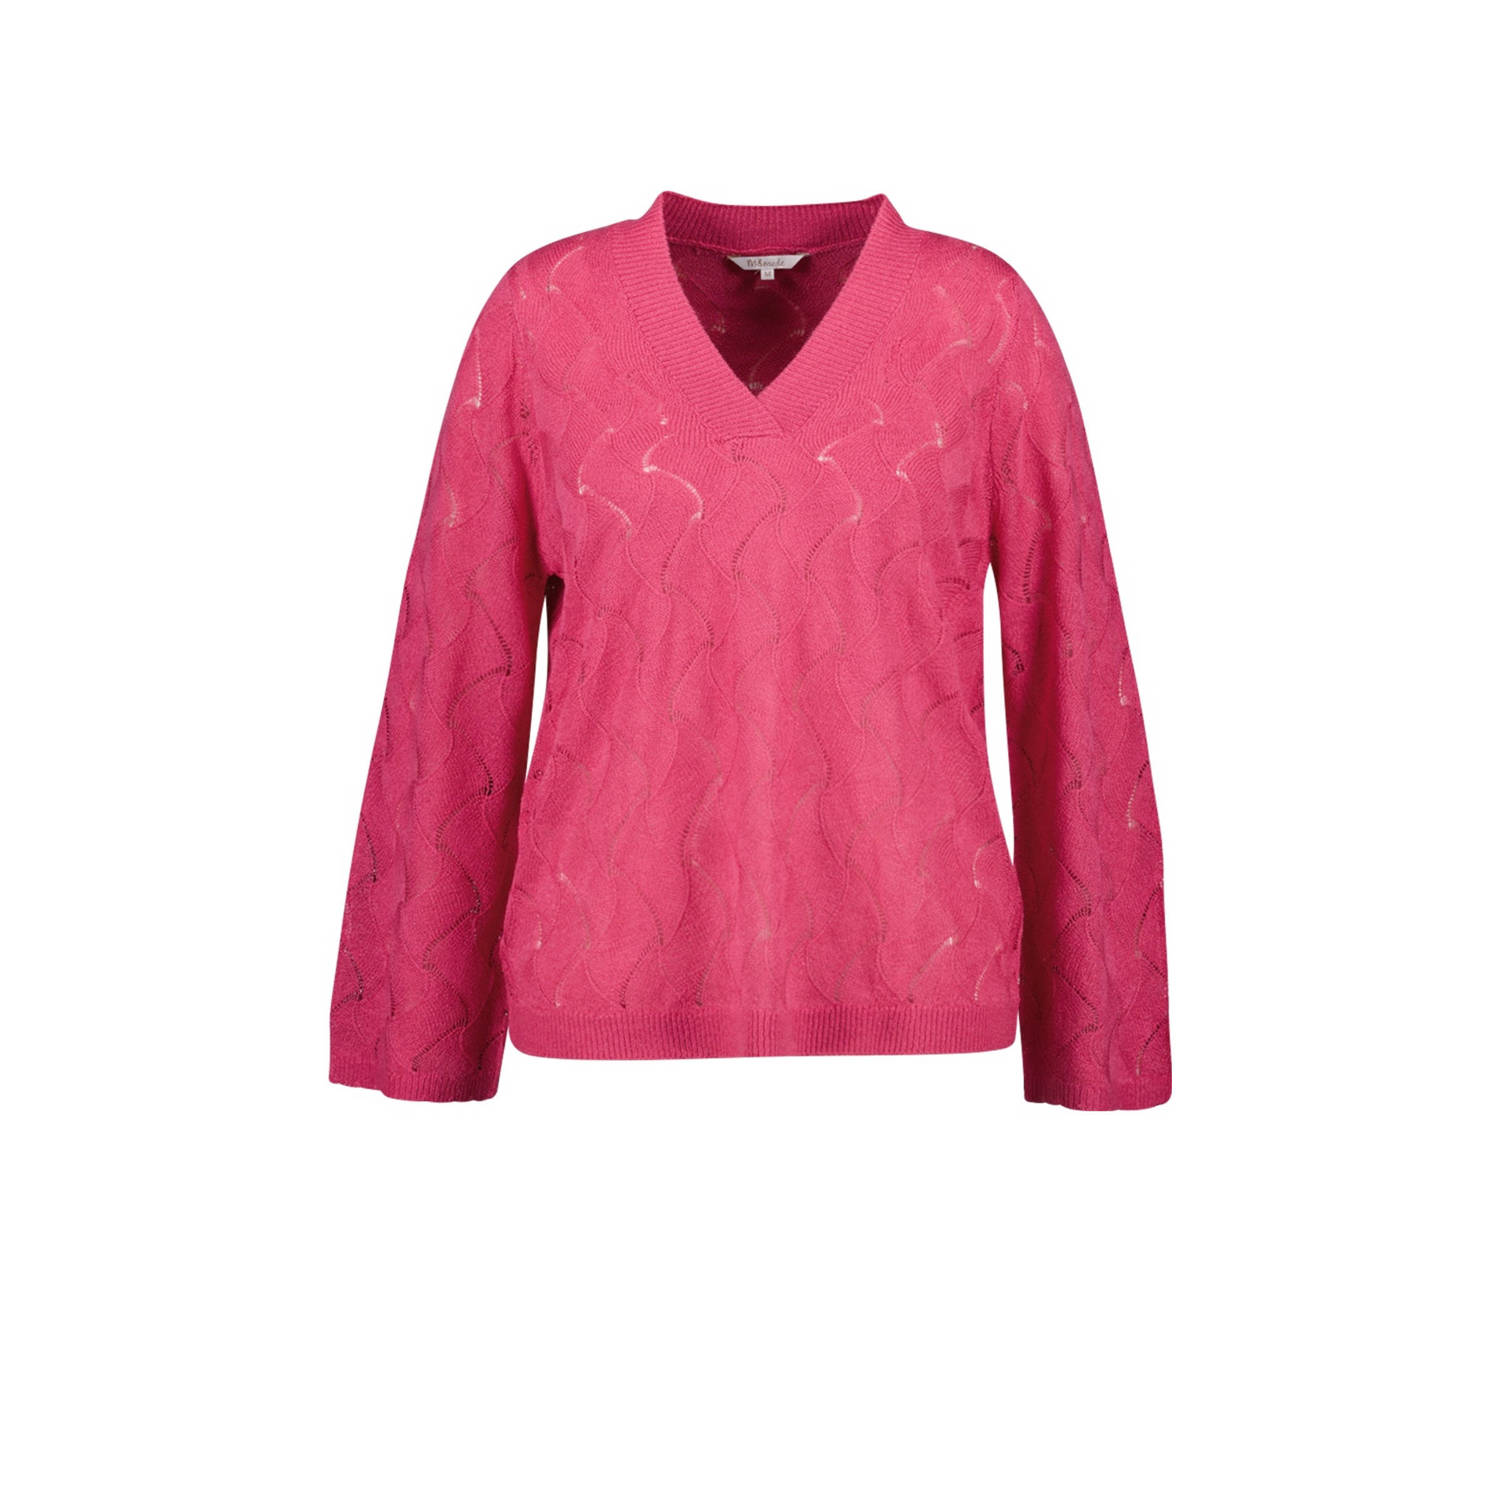 MS Mode fijngebreide trui met ingebreid patroon roze